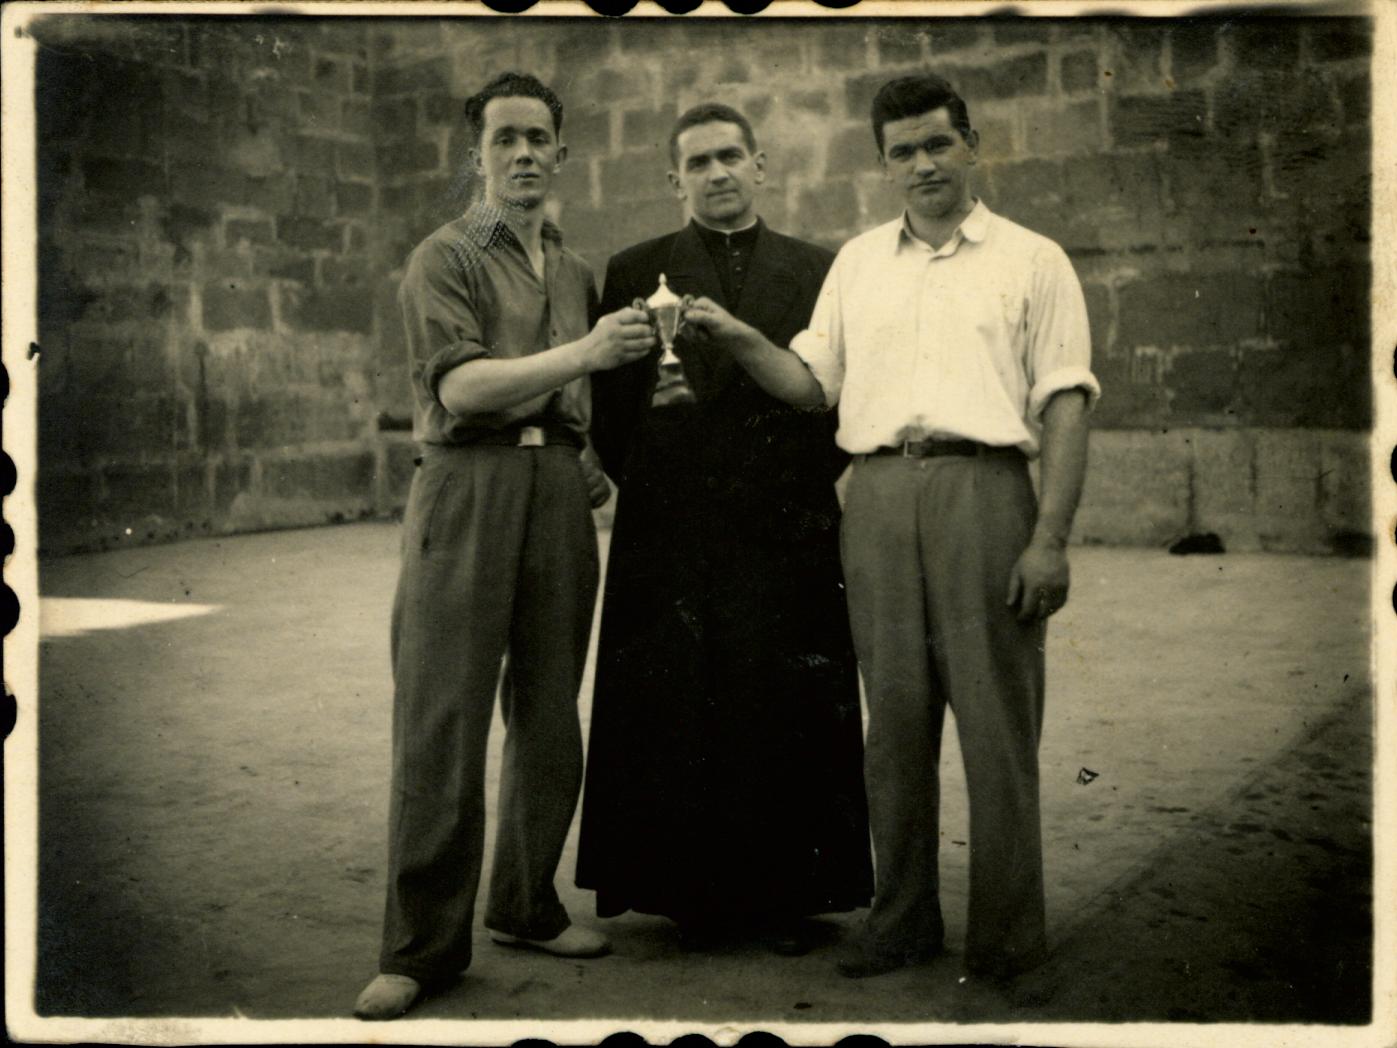 Antonio Zubizarreta, Don Teodoro, Ignacio Irreta en el frontón de Ermua